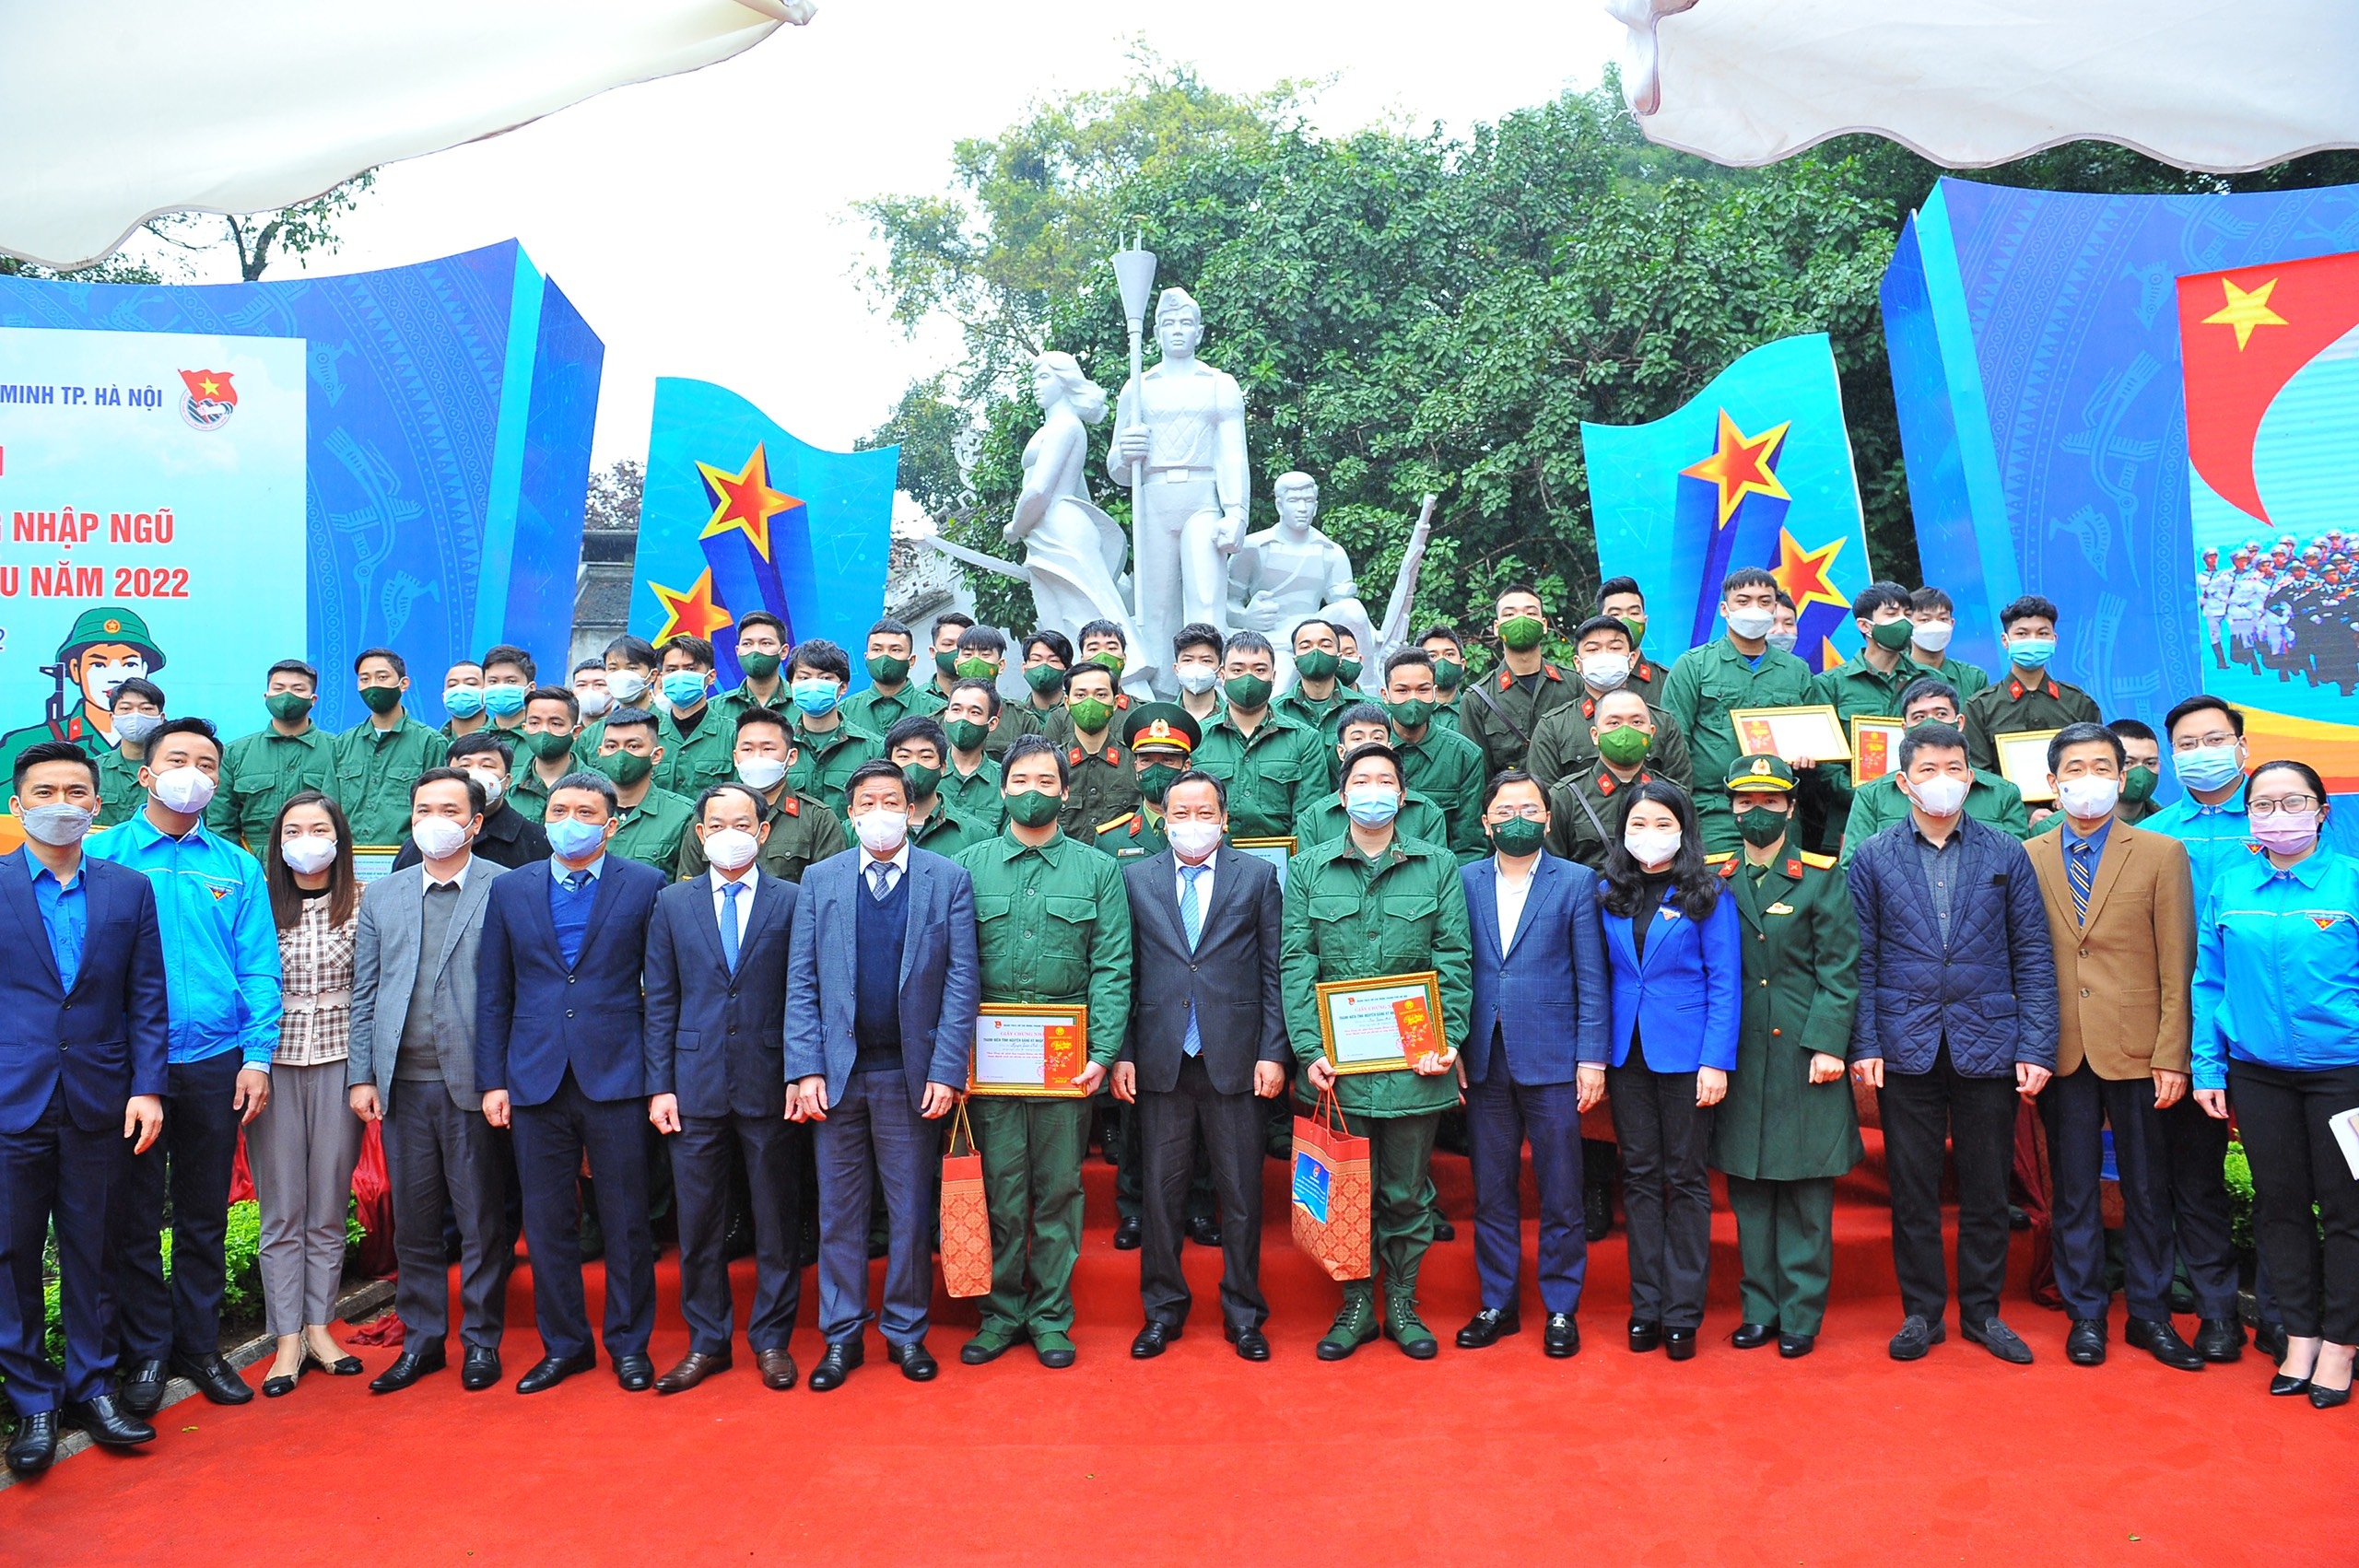 Thành Đoàn Hà Nội gặp mặt thanh niên nhập ngũ năm 2022